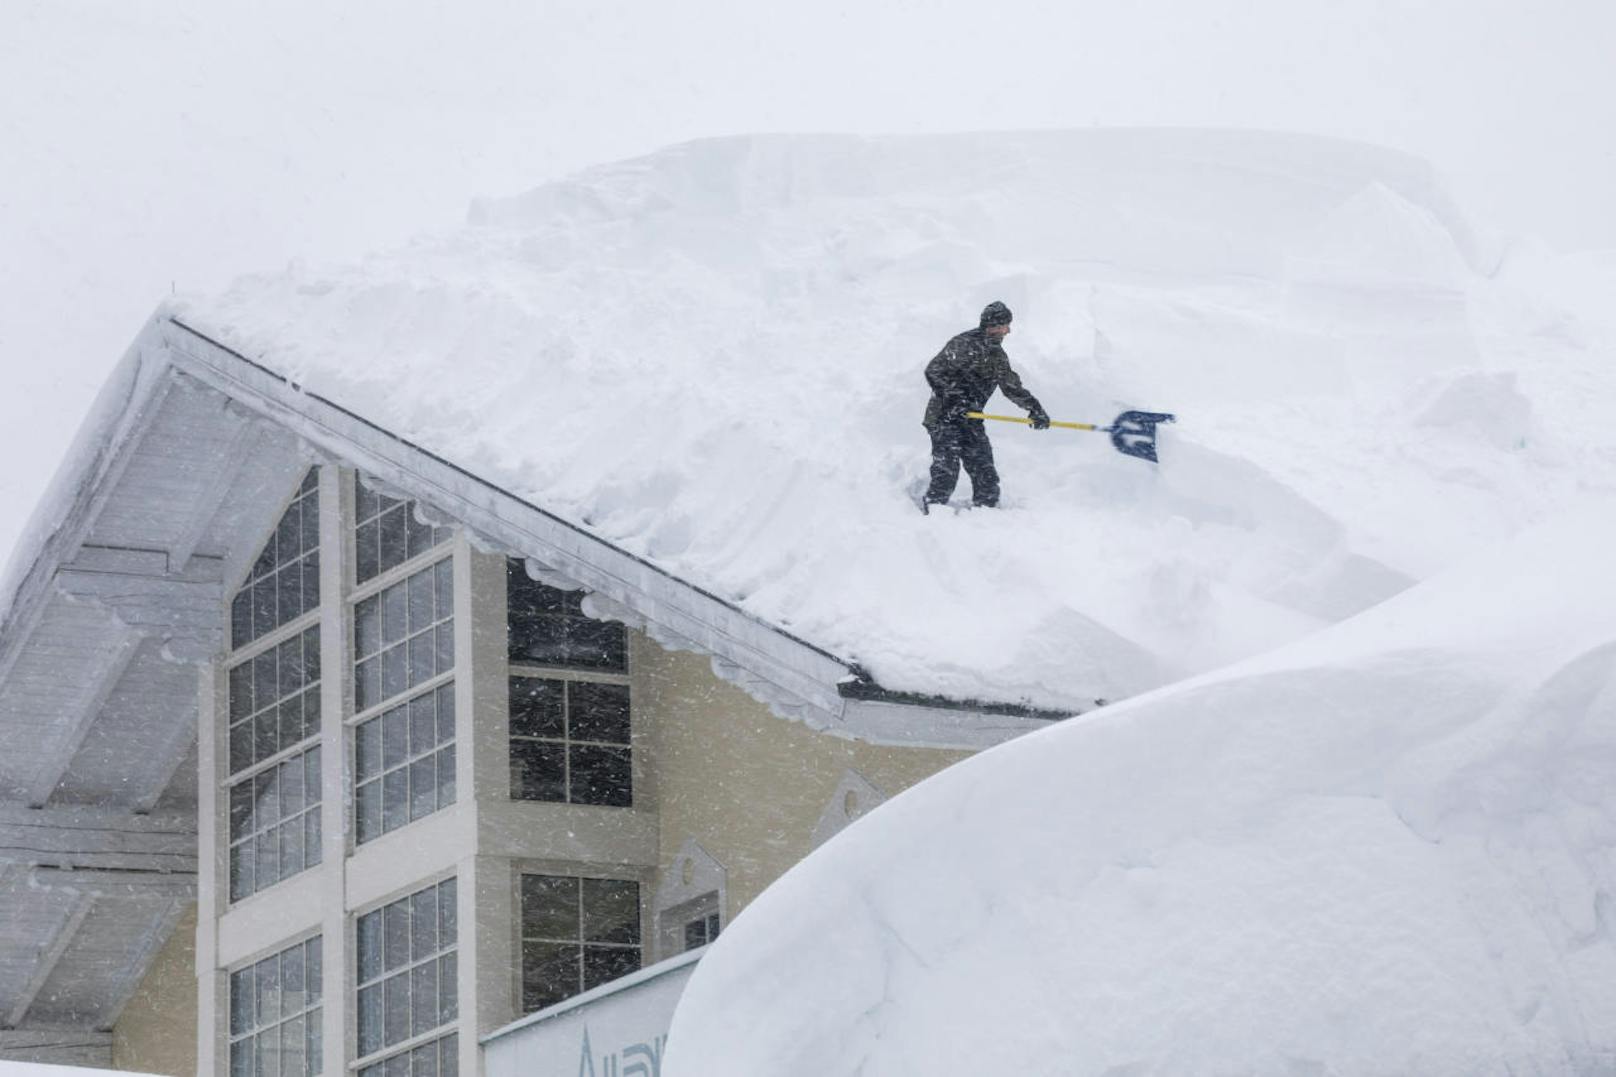 Dabei sind die Schneehöhen gewaltig, wenn man einen 1,80 Meter großen Menschen im Vergleich sieht. Teilweise werden auf den Dächern mit Sägen regelrechte Schnee-Vier-Ecke herausgeschnitten.